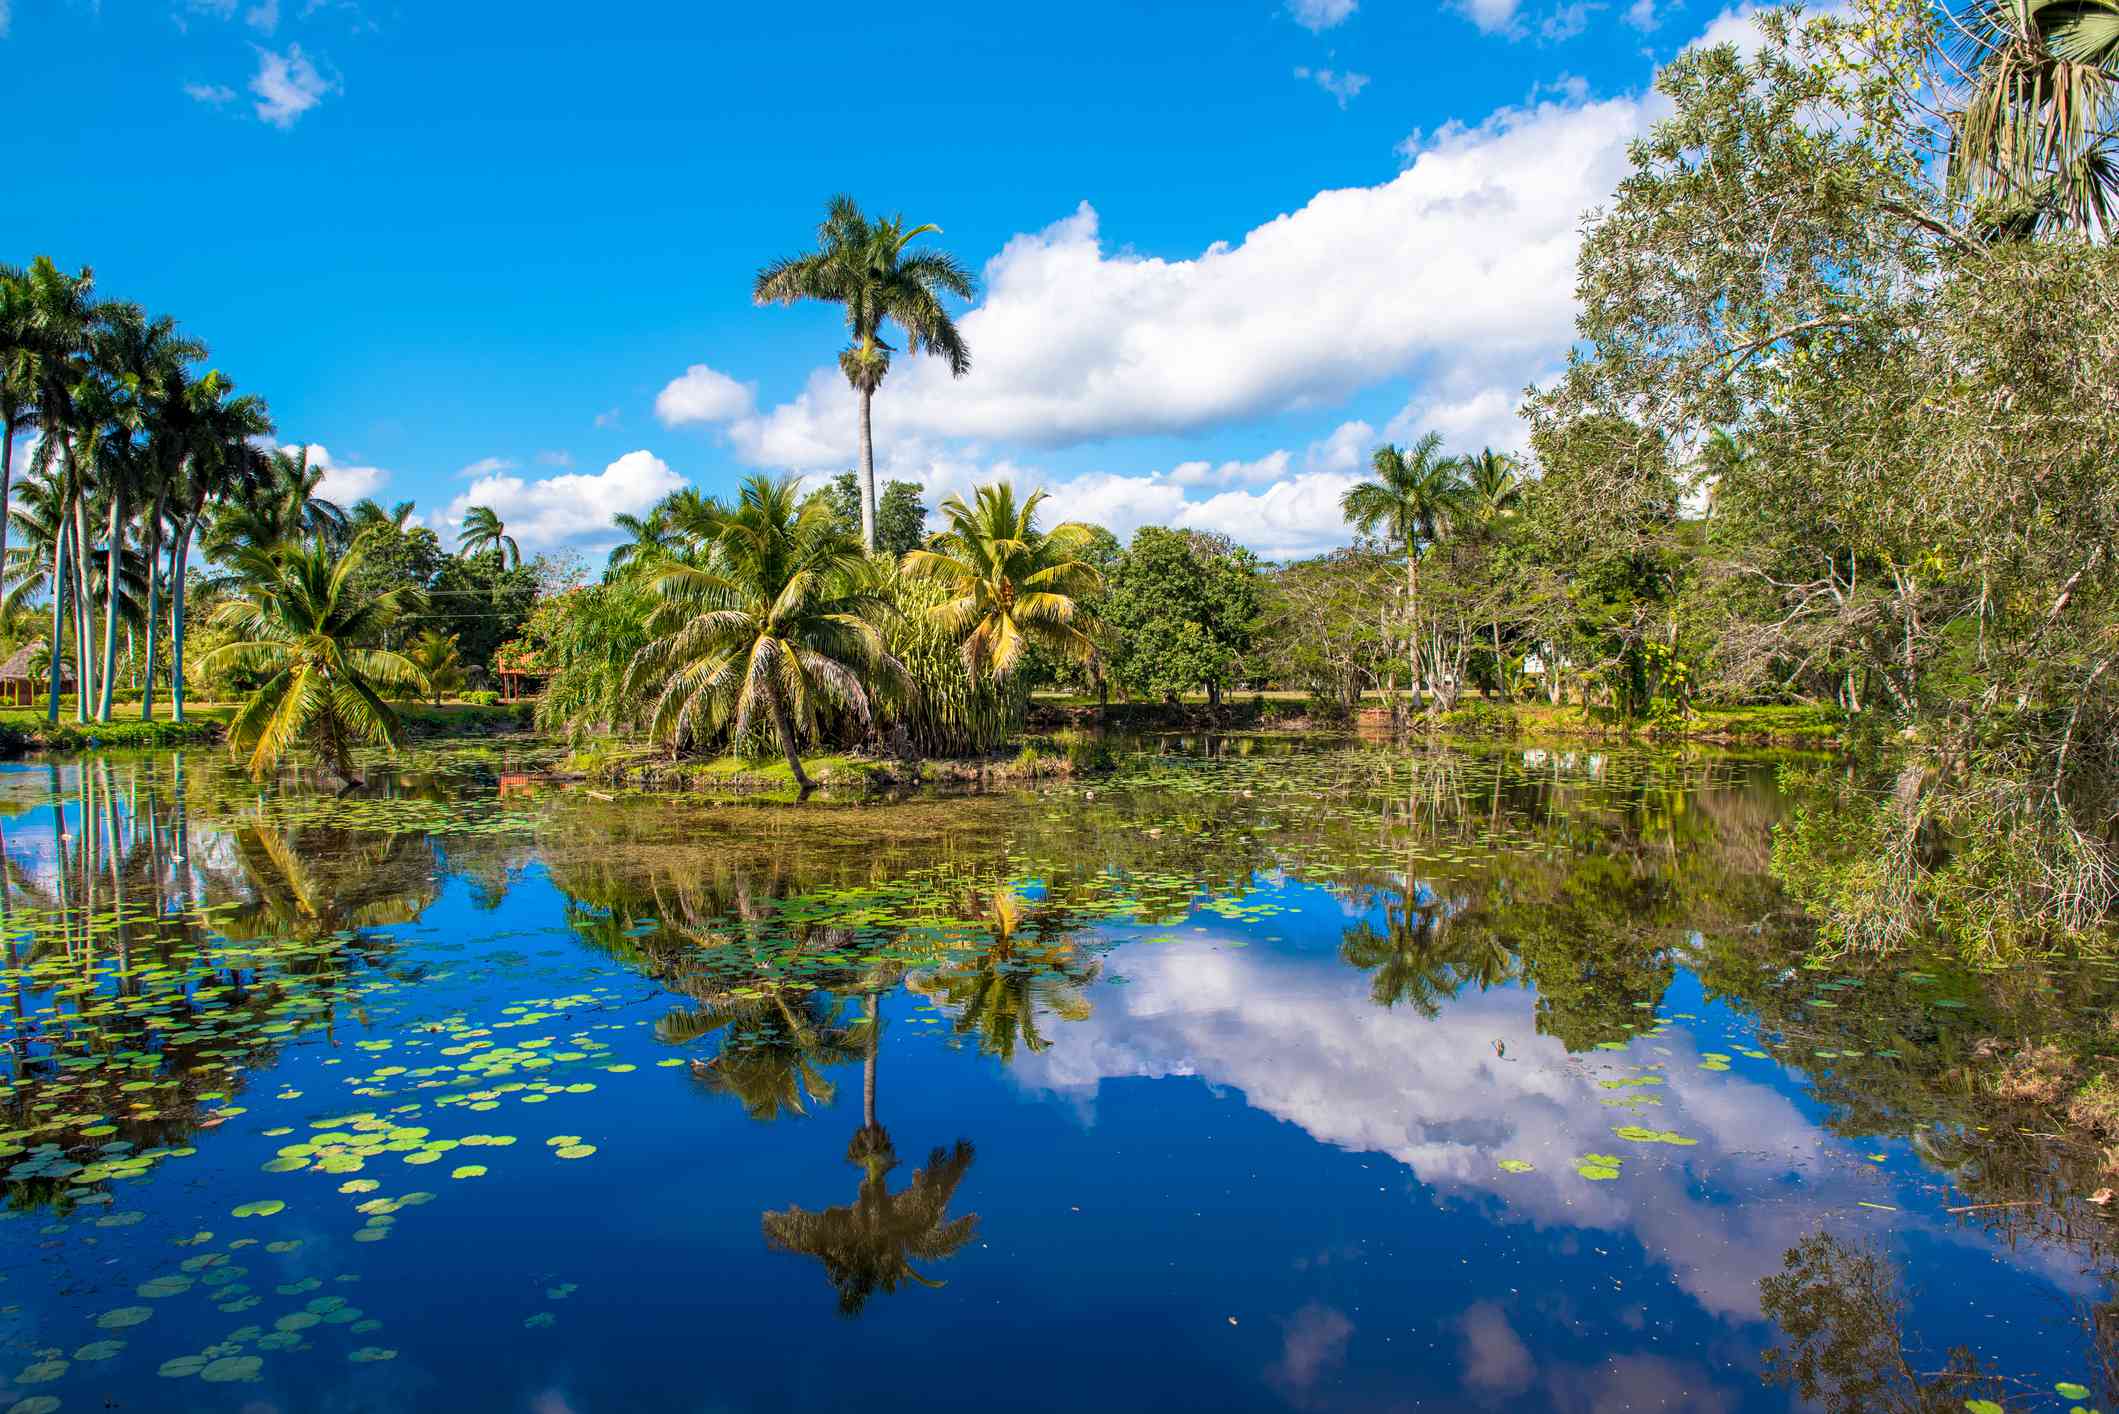 Cielo azul vibrante reflejado en el agua azul con plantas verdes de lirio en el agua rodeadas de palmeras y árboles de hoja perenne en la zona ecoturística de Ciénaga de Zapata